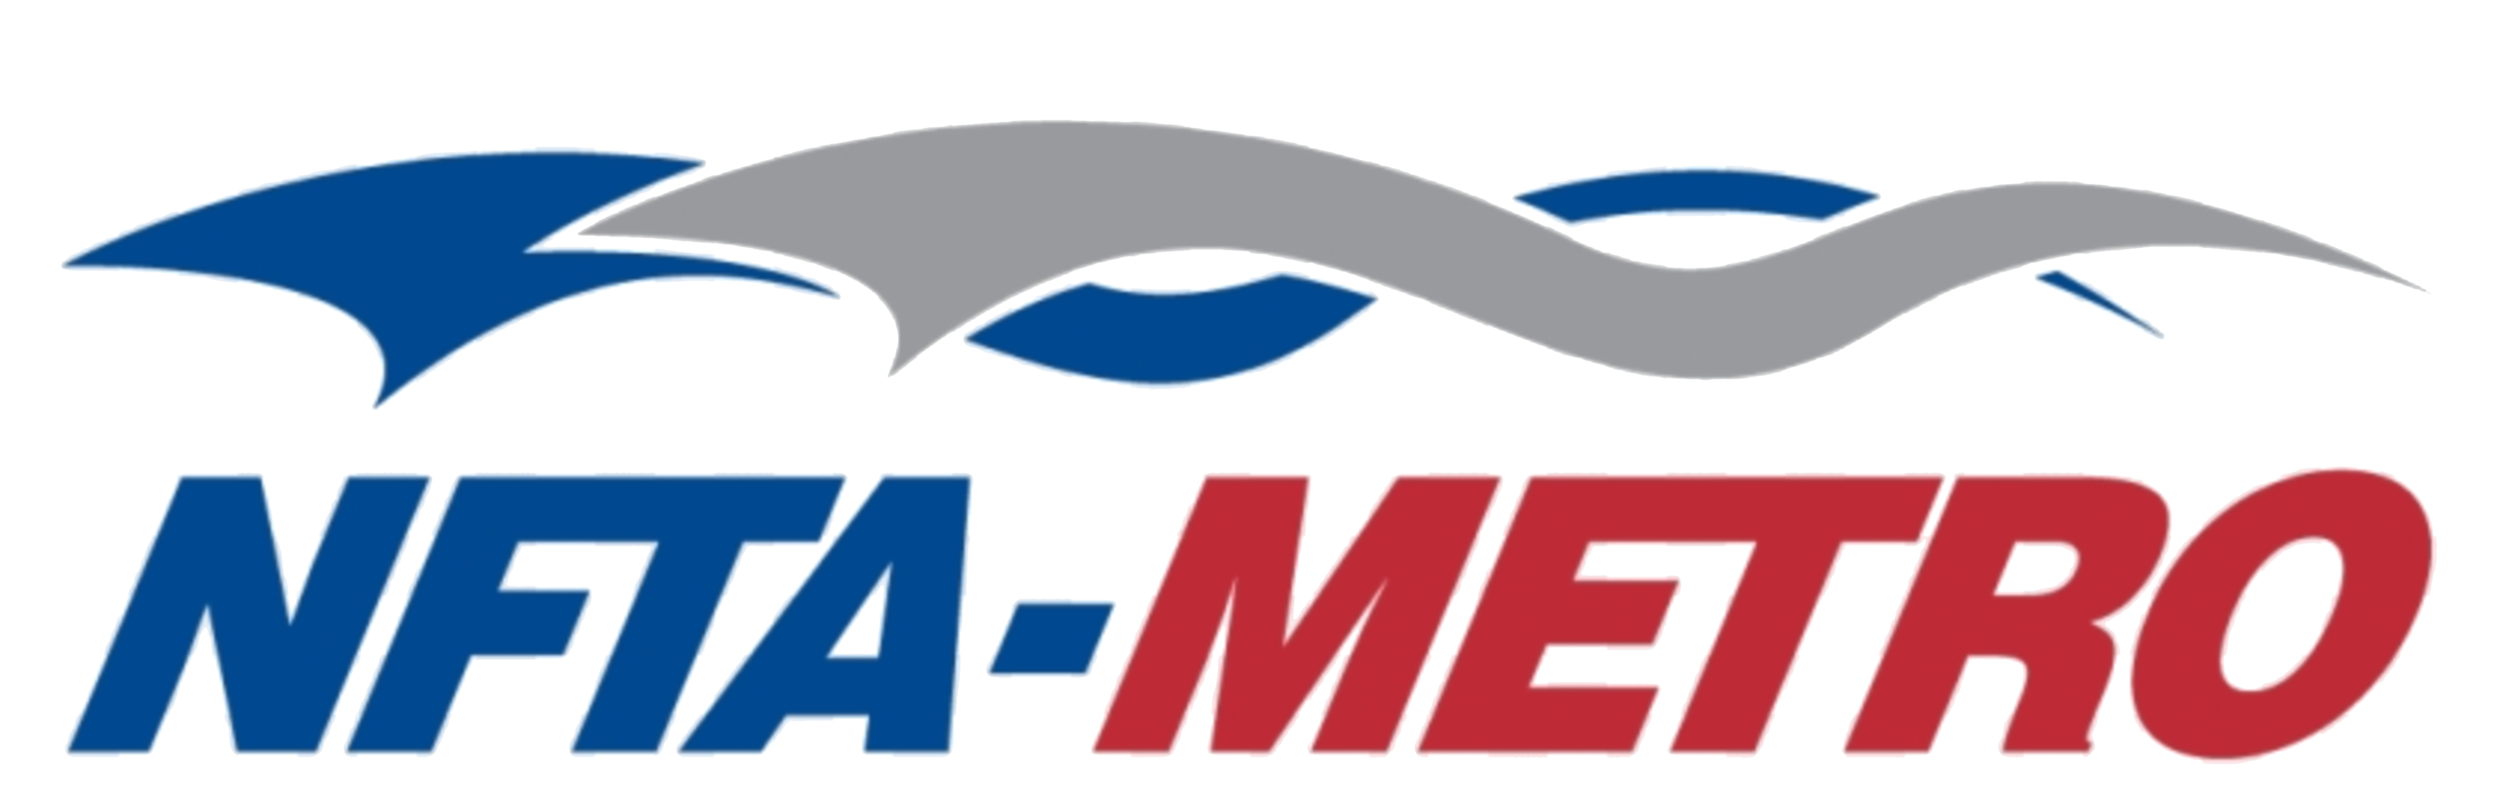 616-6169774_nfta-metro-logo-nfta-metro-hd-png-download (1).png